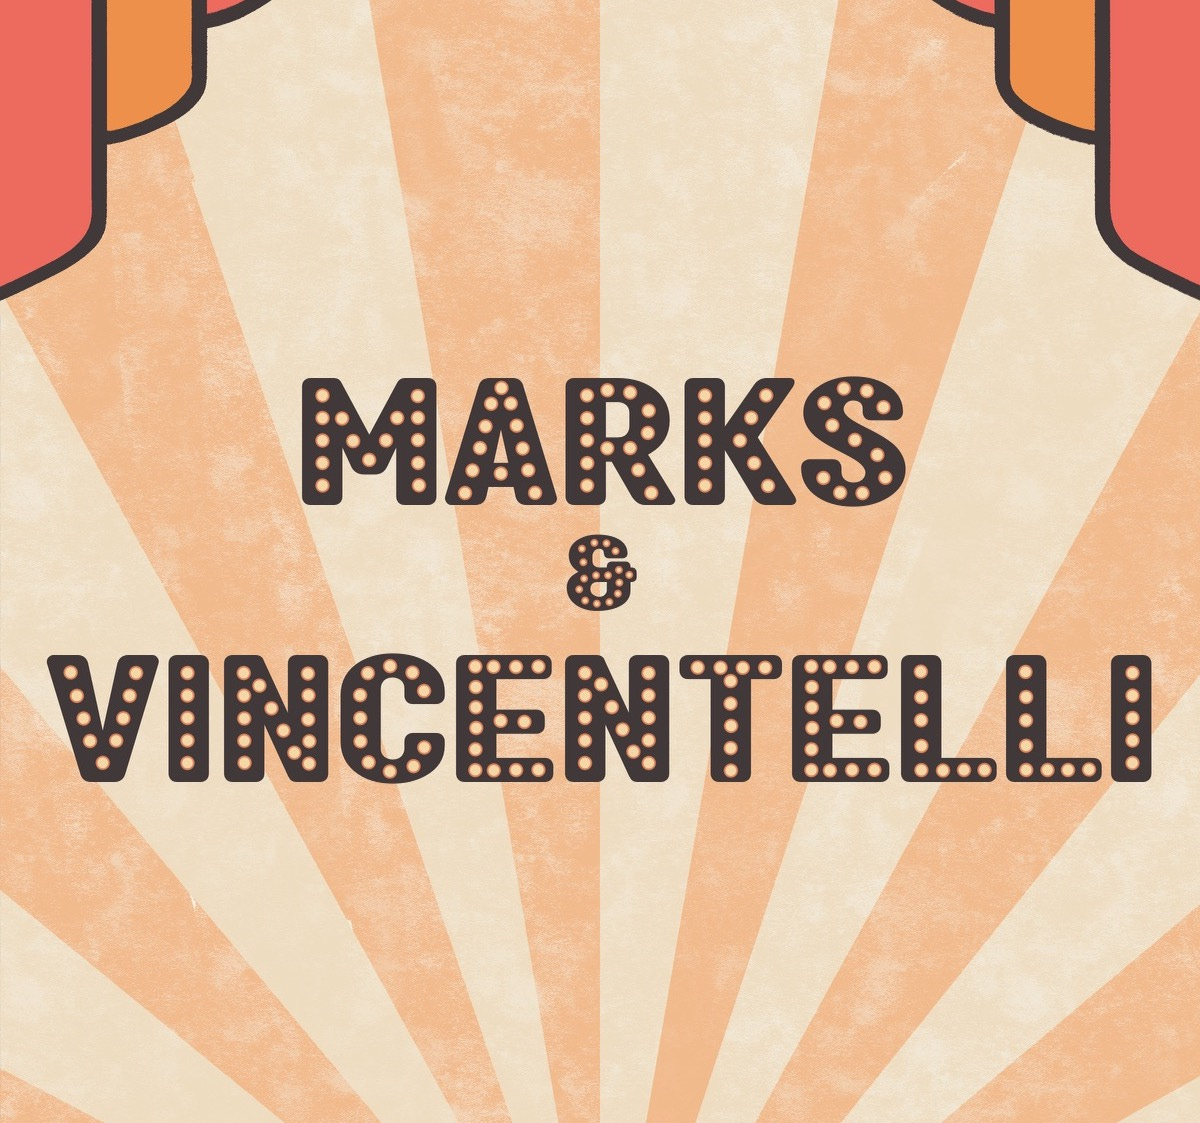 Marks & Vincentelli